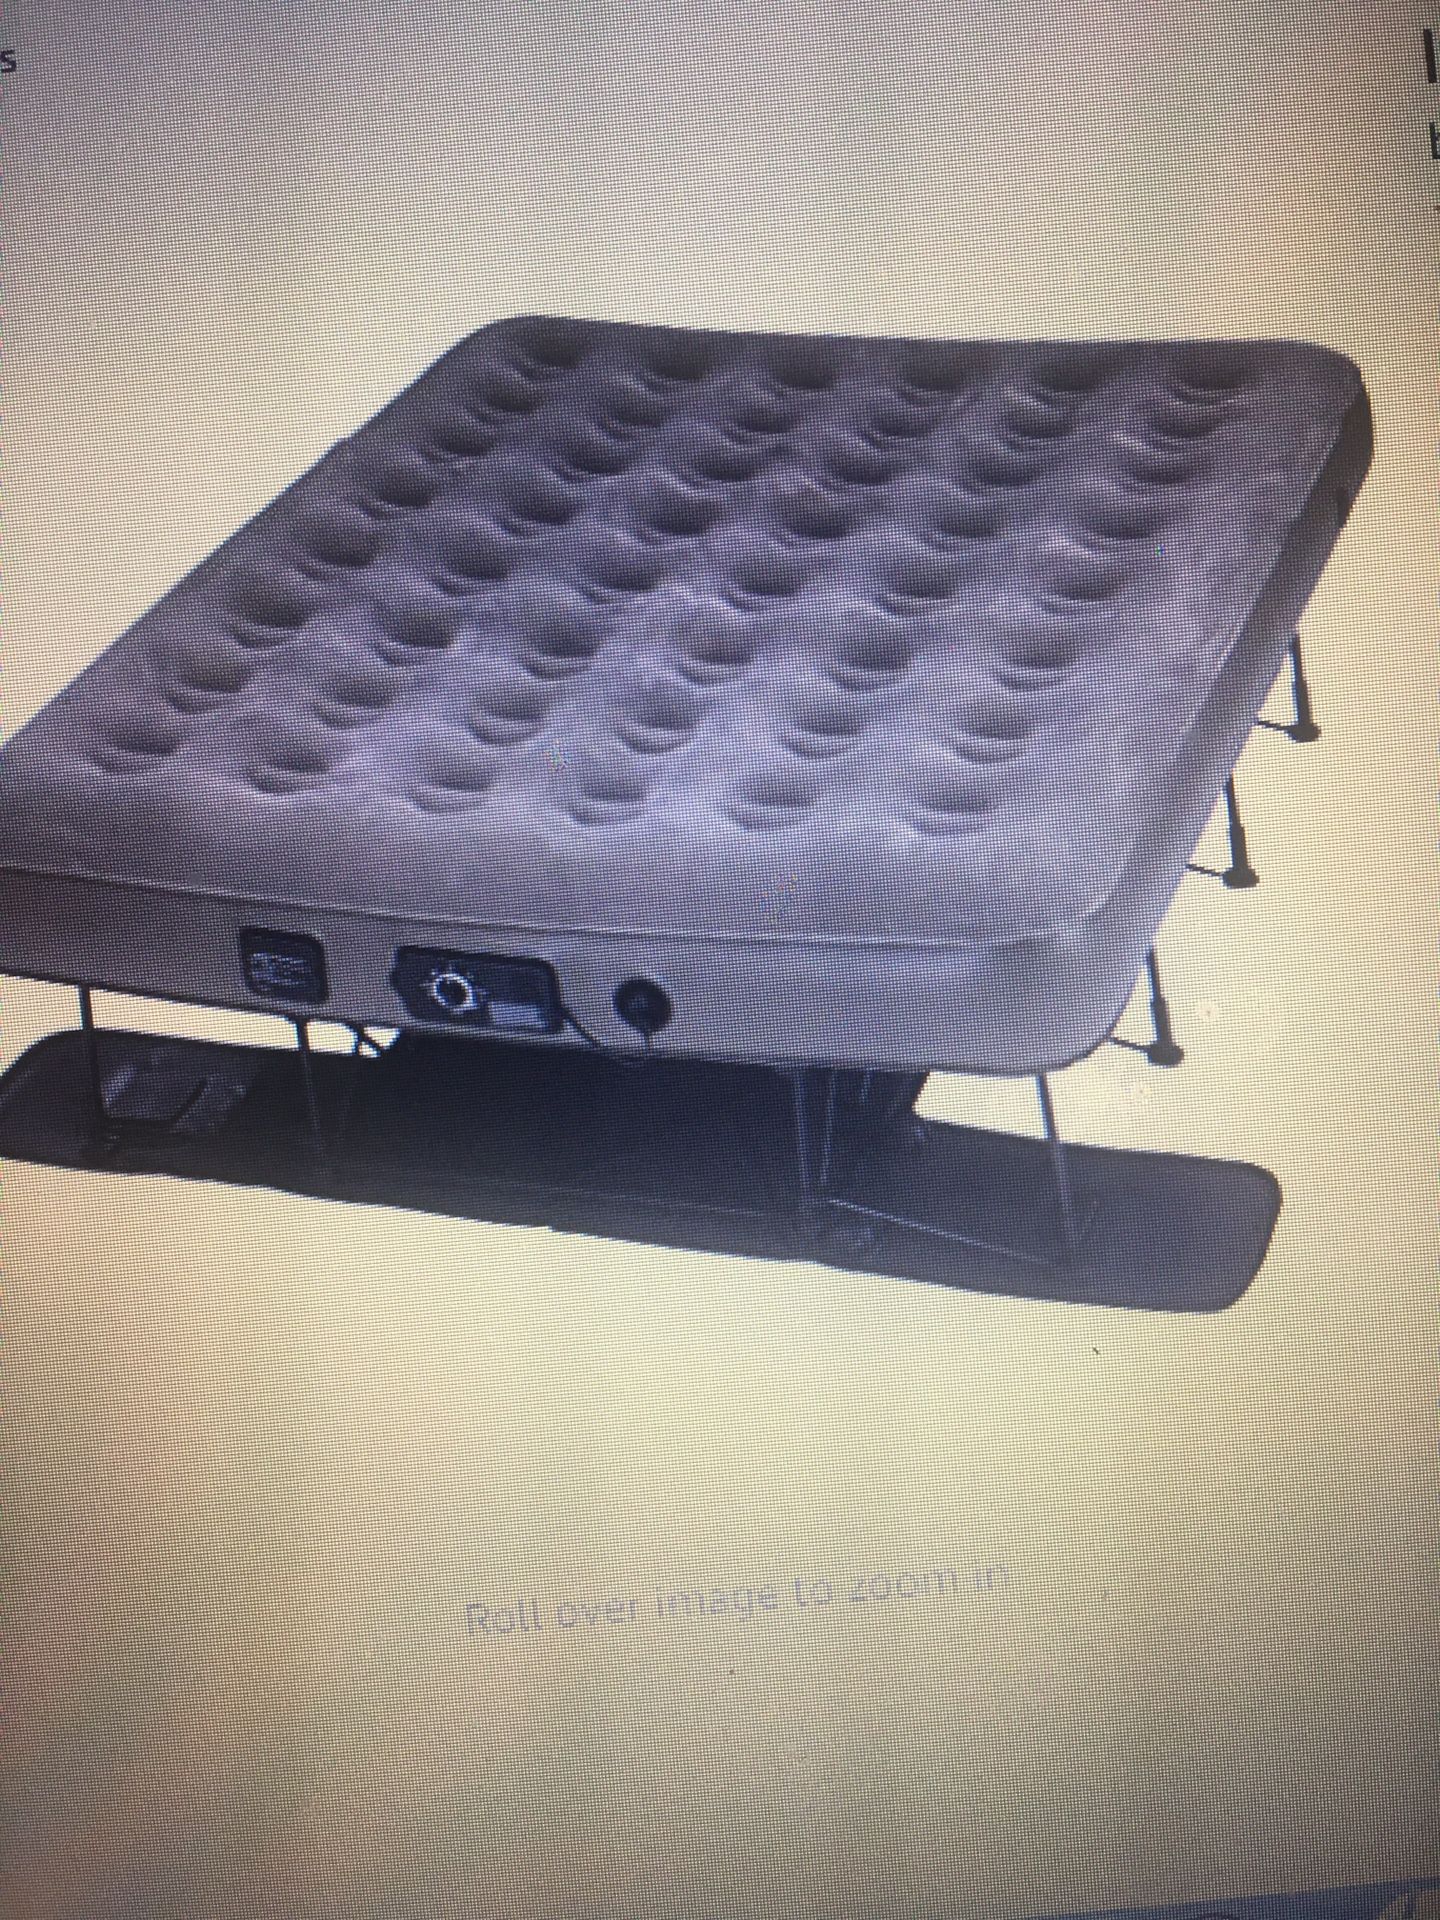 Serta Queen size air mattress bed